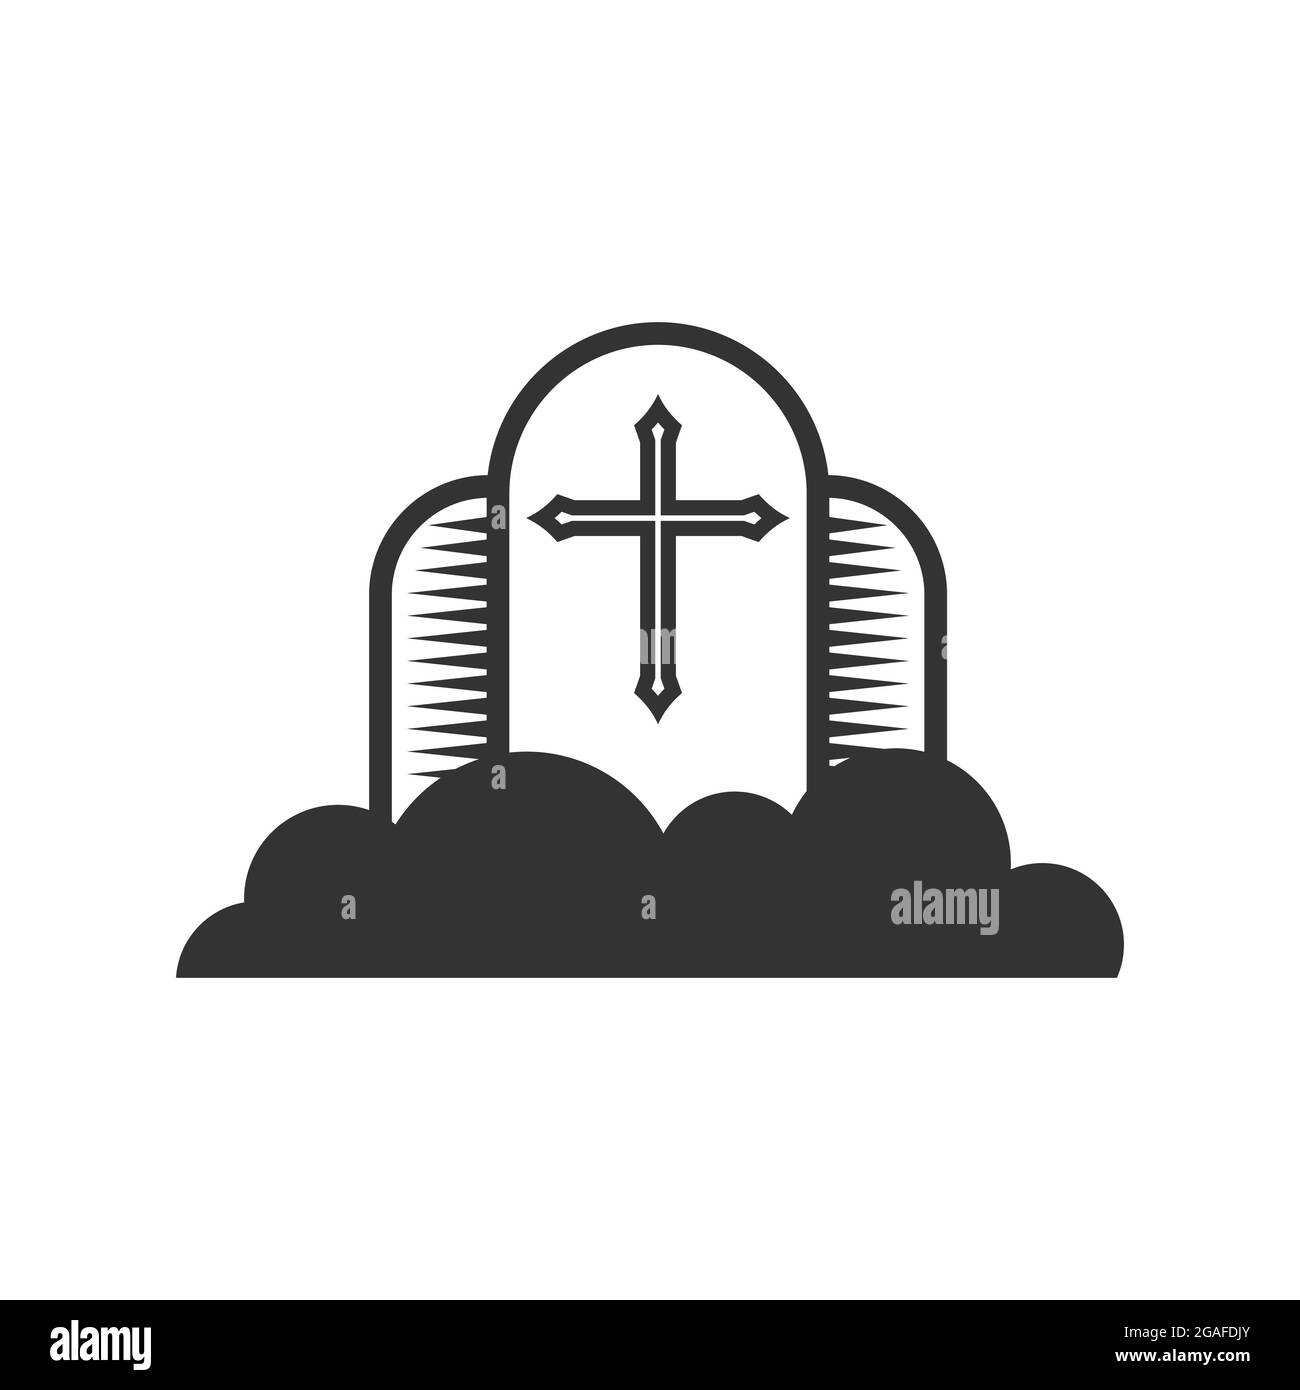 Christliche Illustration. Kirchenlogo. Kreuz des Herrn Jesus Christus vor dem Hintergrund der Wolken, dem Reich Gottes. Stock Vektor